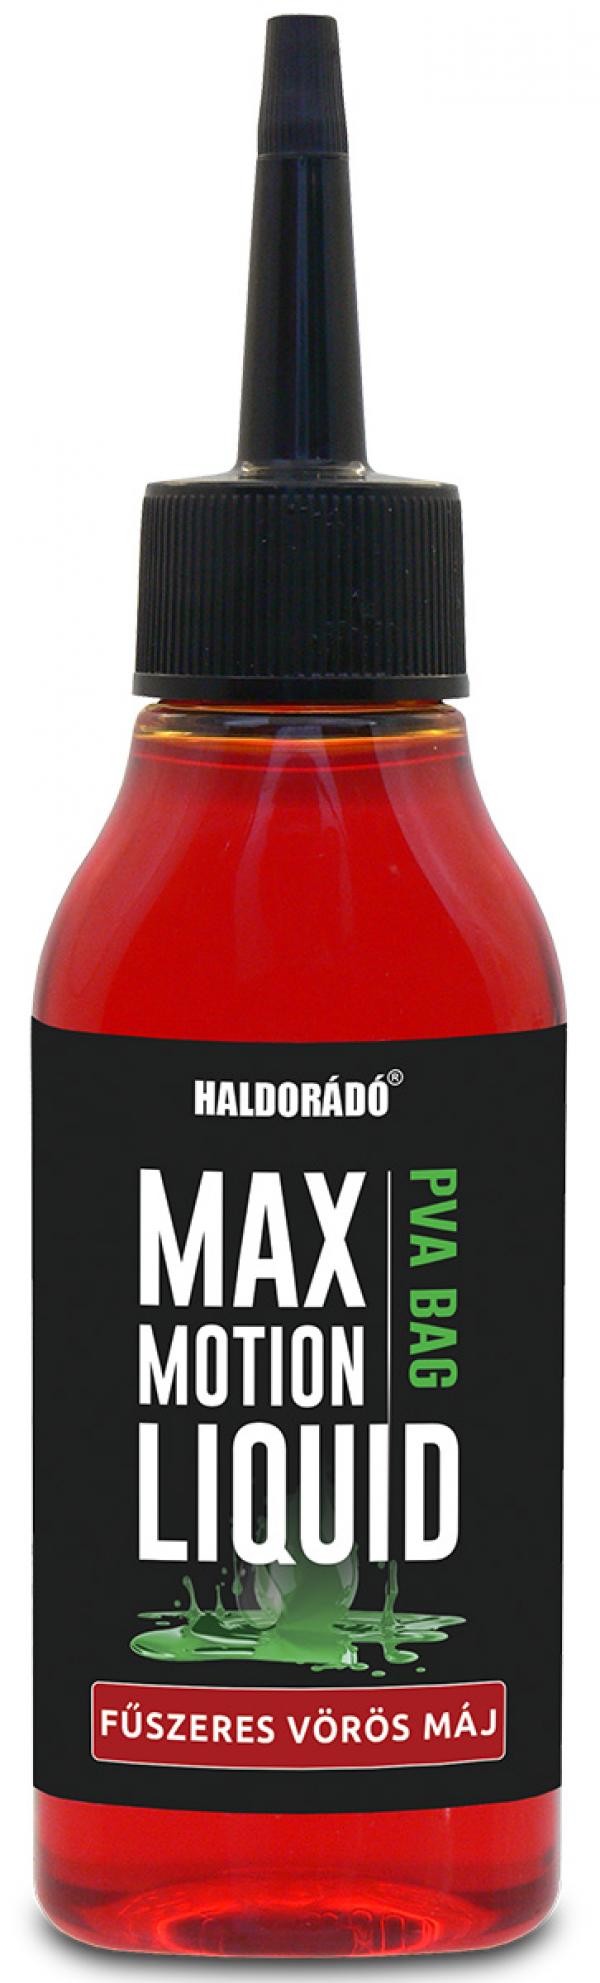 HALDORÁDÓ MAX MOTION PVA Bag Liquid - Fűszeres Vörös Máj...